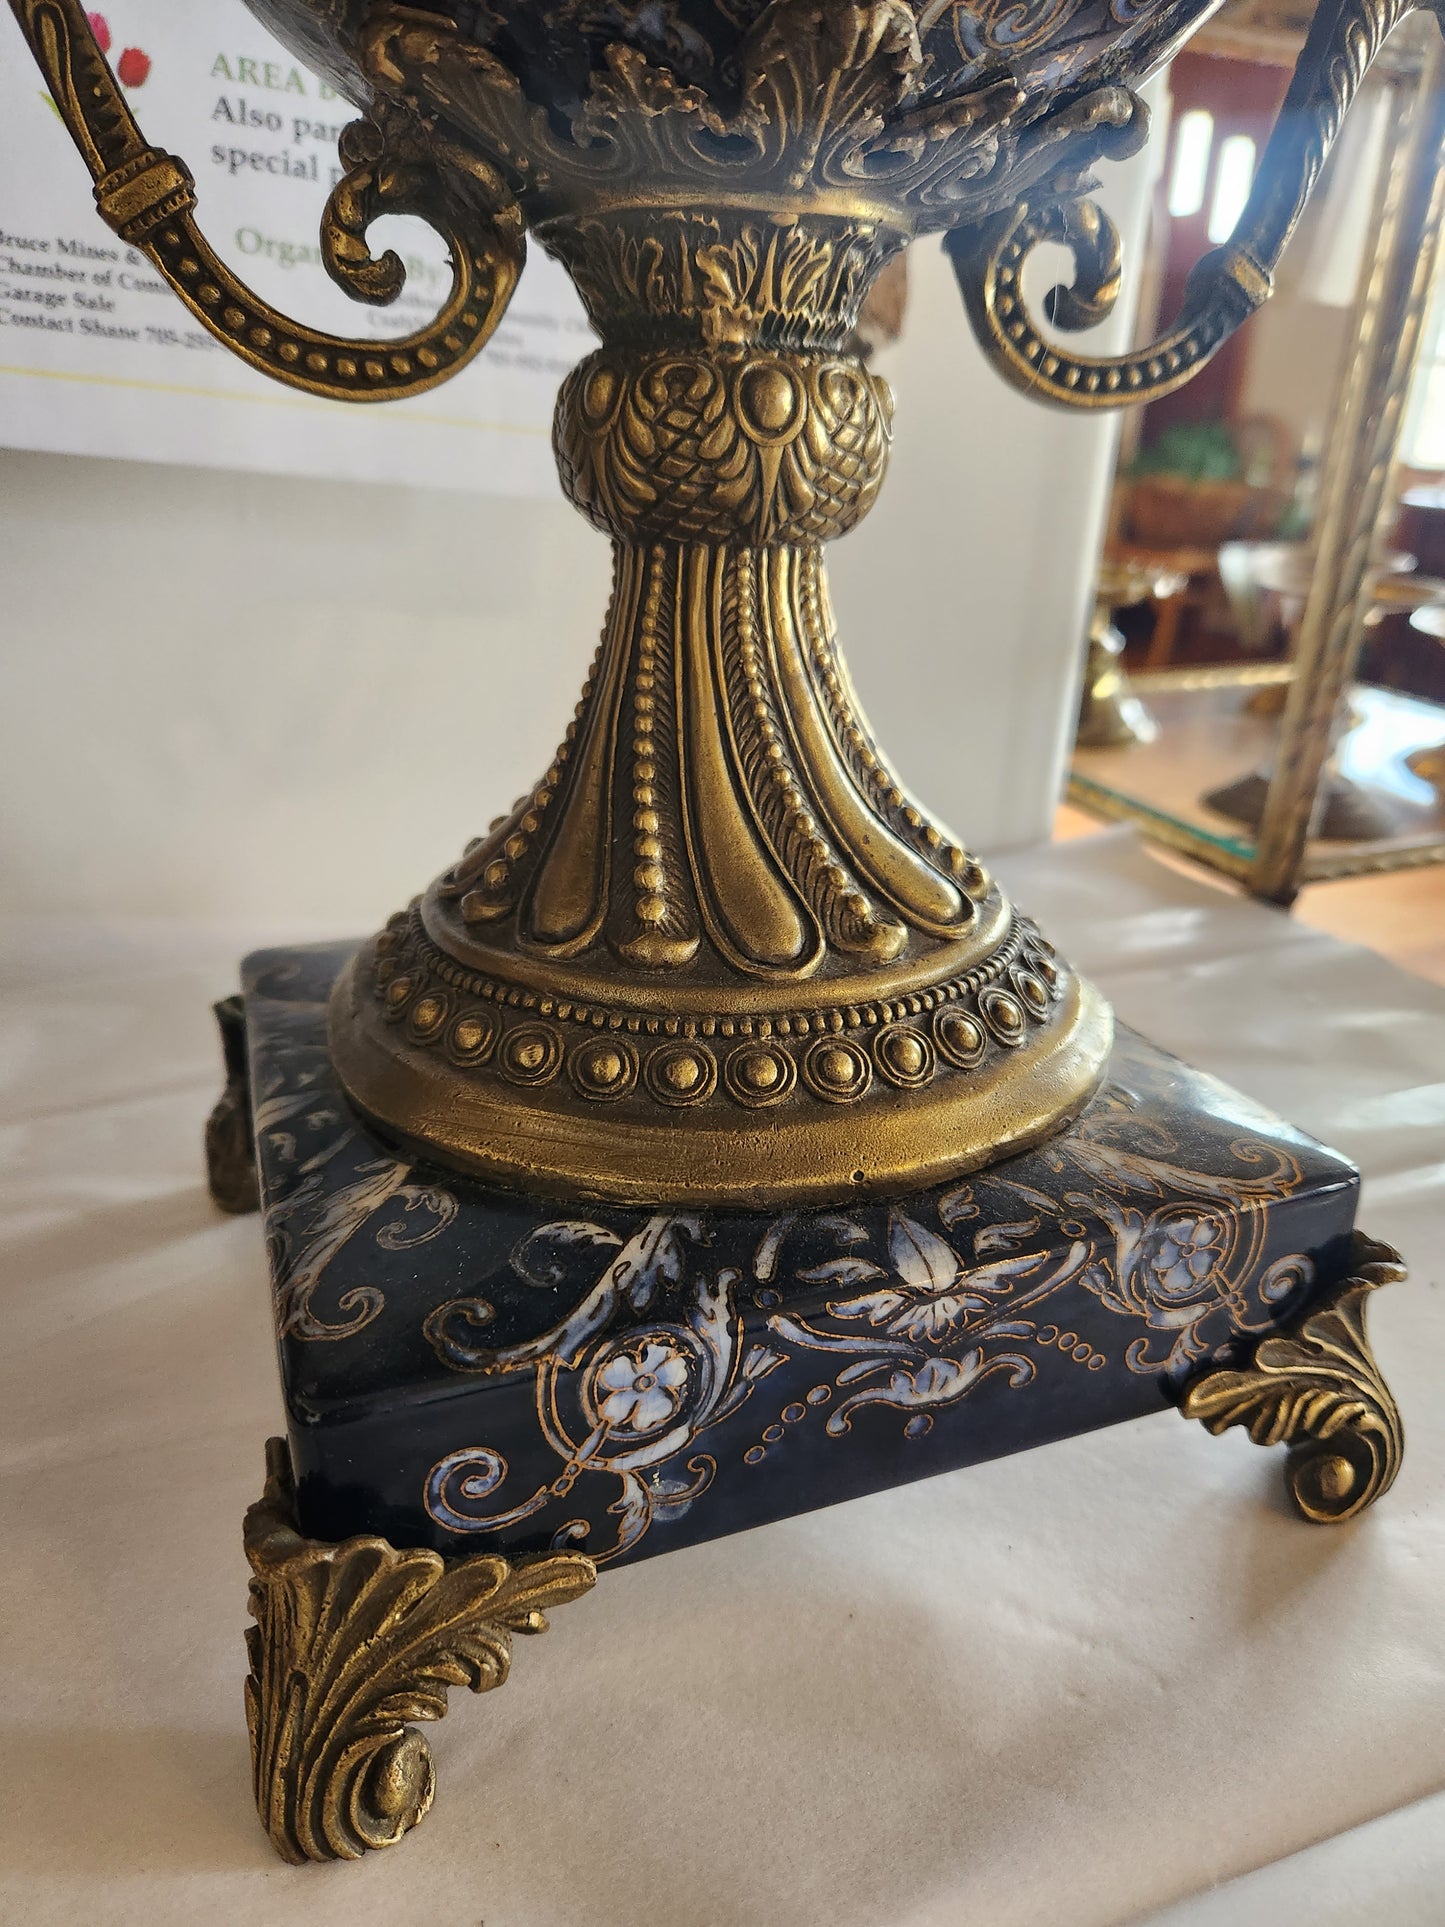 Decorative Trophy Cup (non-vintage)